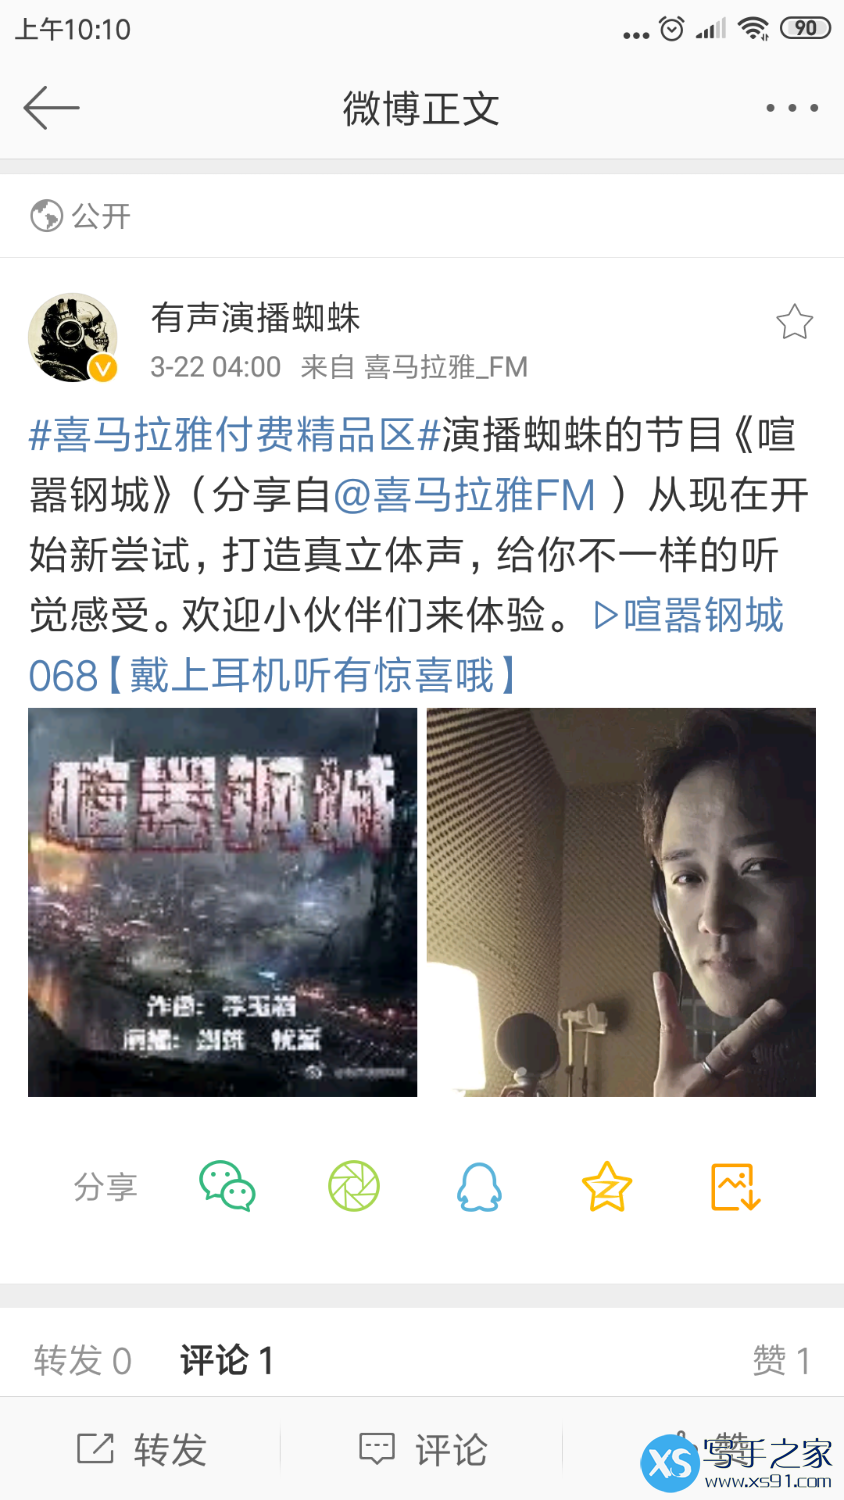 Screenshot_2019-03-22-10-10-30-317_com.sina.weibo.png